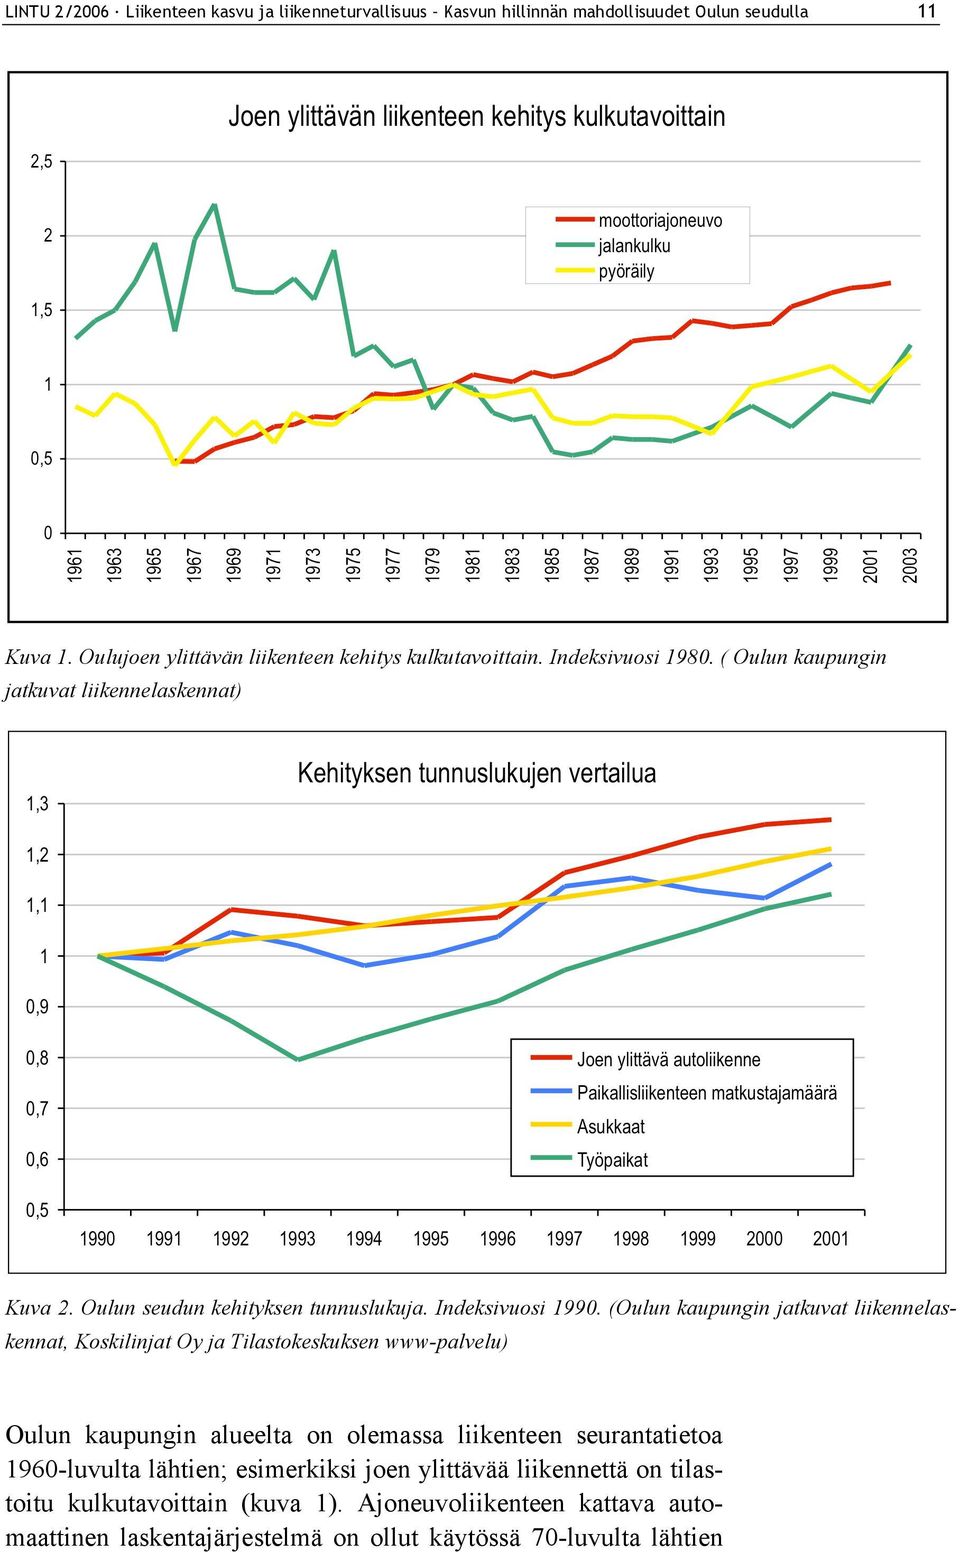 Oulun seudun kehityksen tunnuslukuja. Indeksivuosi 1990.